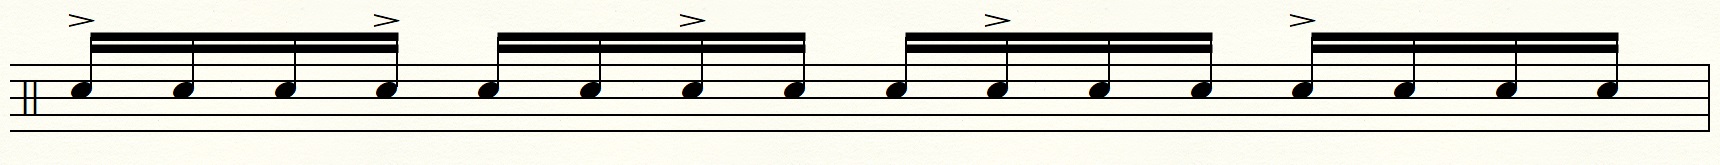 ドラムのバケラッタの説明譜面「16分音符の3つ割り」